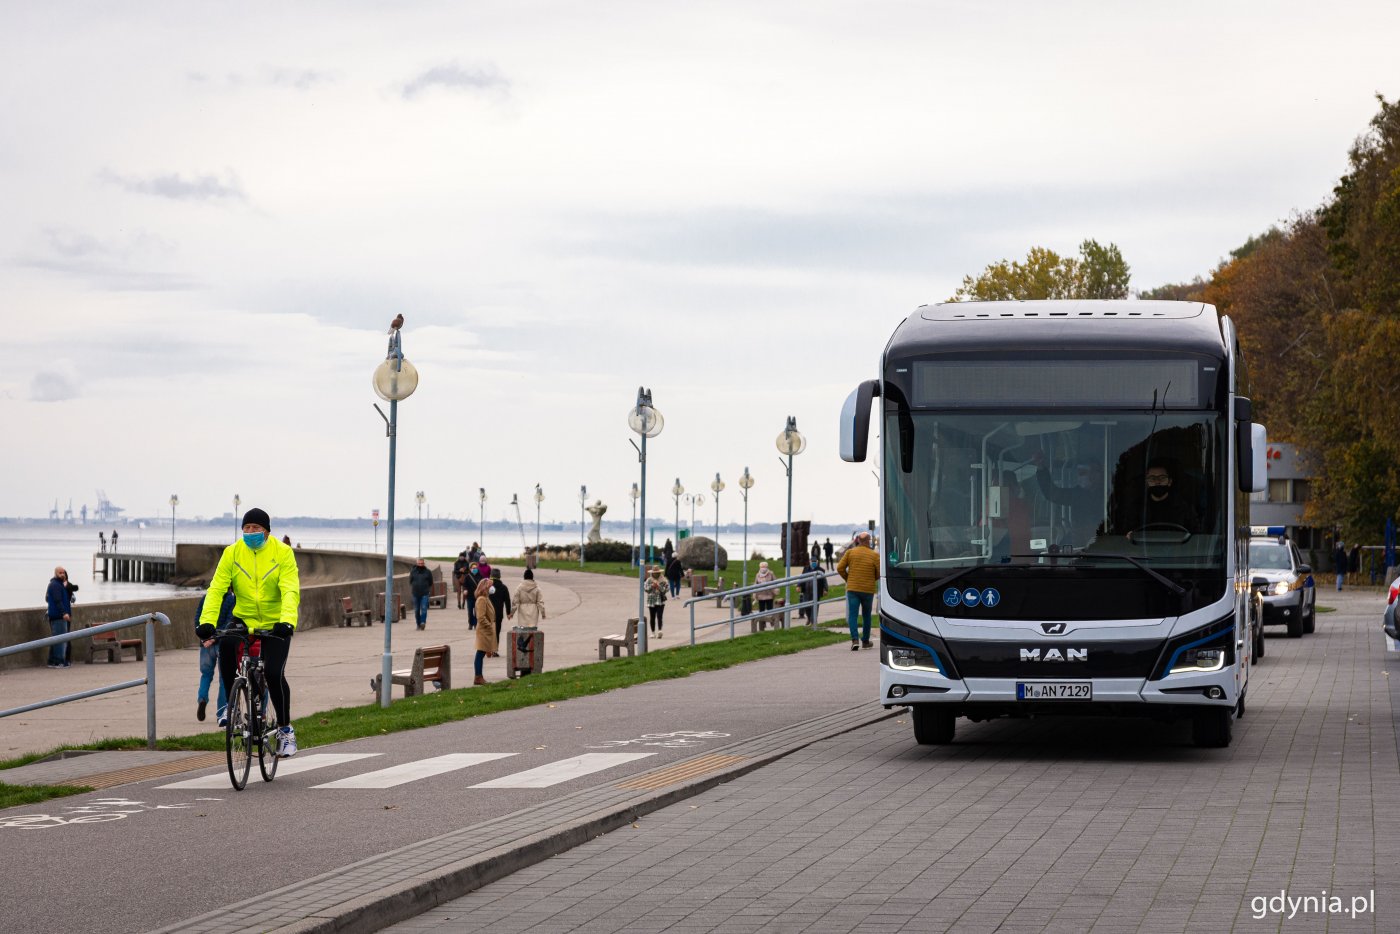 Elektryczny autobus na parkingu przy Skwerze Arki Gdyni, obok na drodze rowerowej przygląda mu się rowerzysta, spacerują ludzie. W tle widoczny bulwar nadmorski i morze.